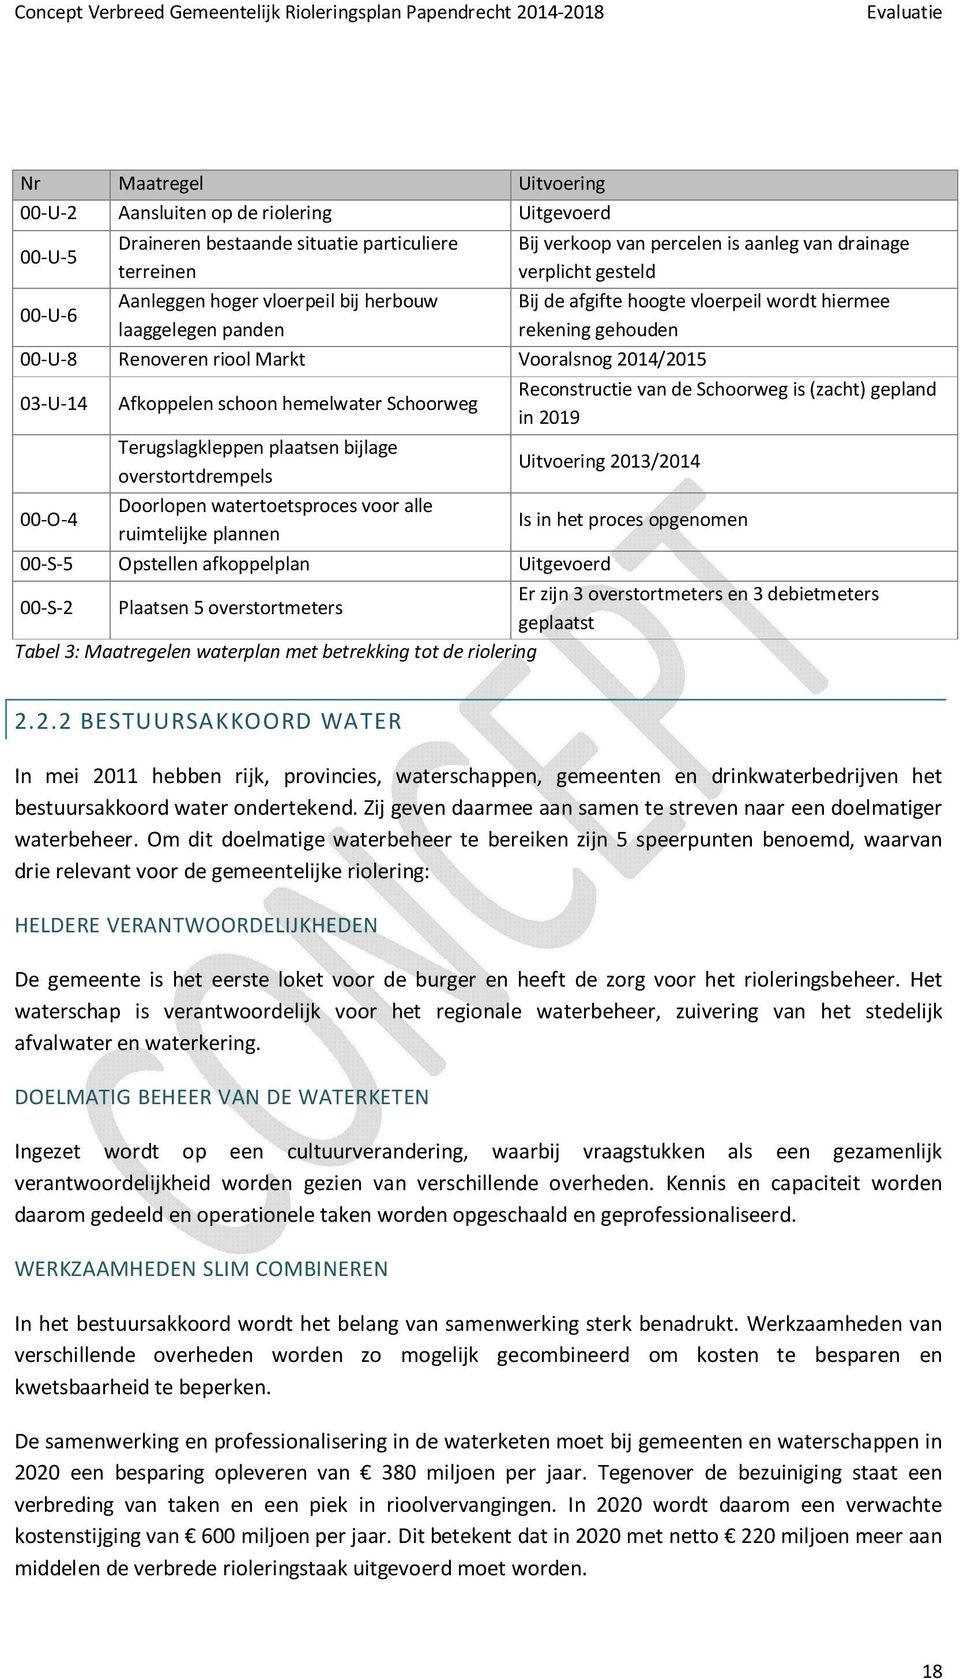 Afkoppelen schoon hemelwater Schoorweg Reconstructie van de Schoorweg is (zacht) gepland in 2019 Terugslagkleppen plaatsen bijlage overstortdrempels Uitvoering 2013/2014 00-O-4 Doorlopen